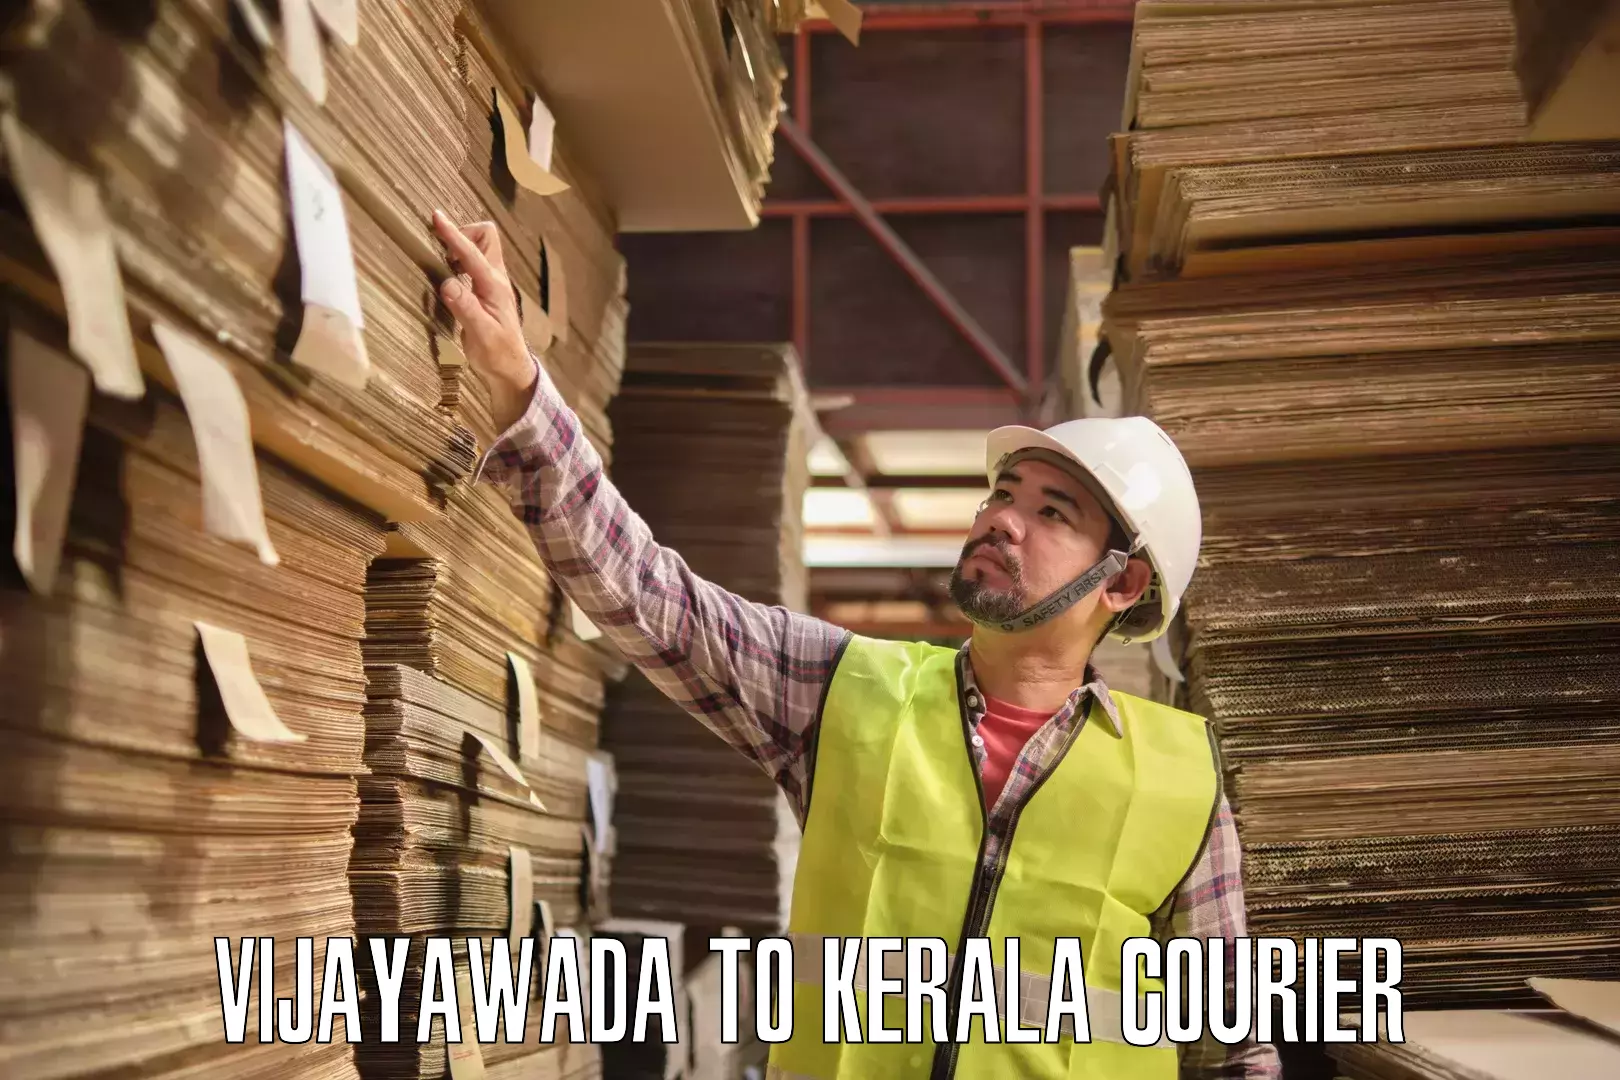 Reliable courier services Vijayawada to Kottarakkara